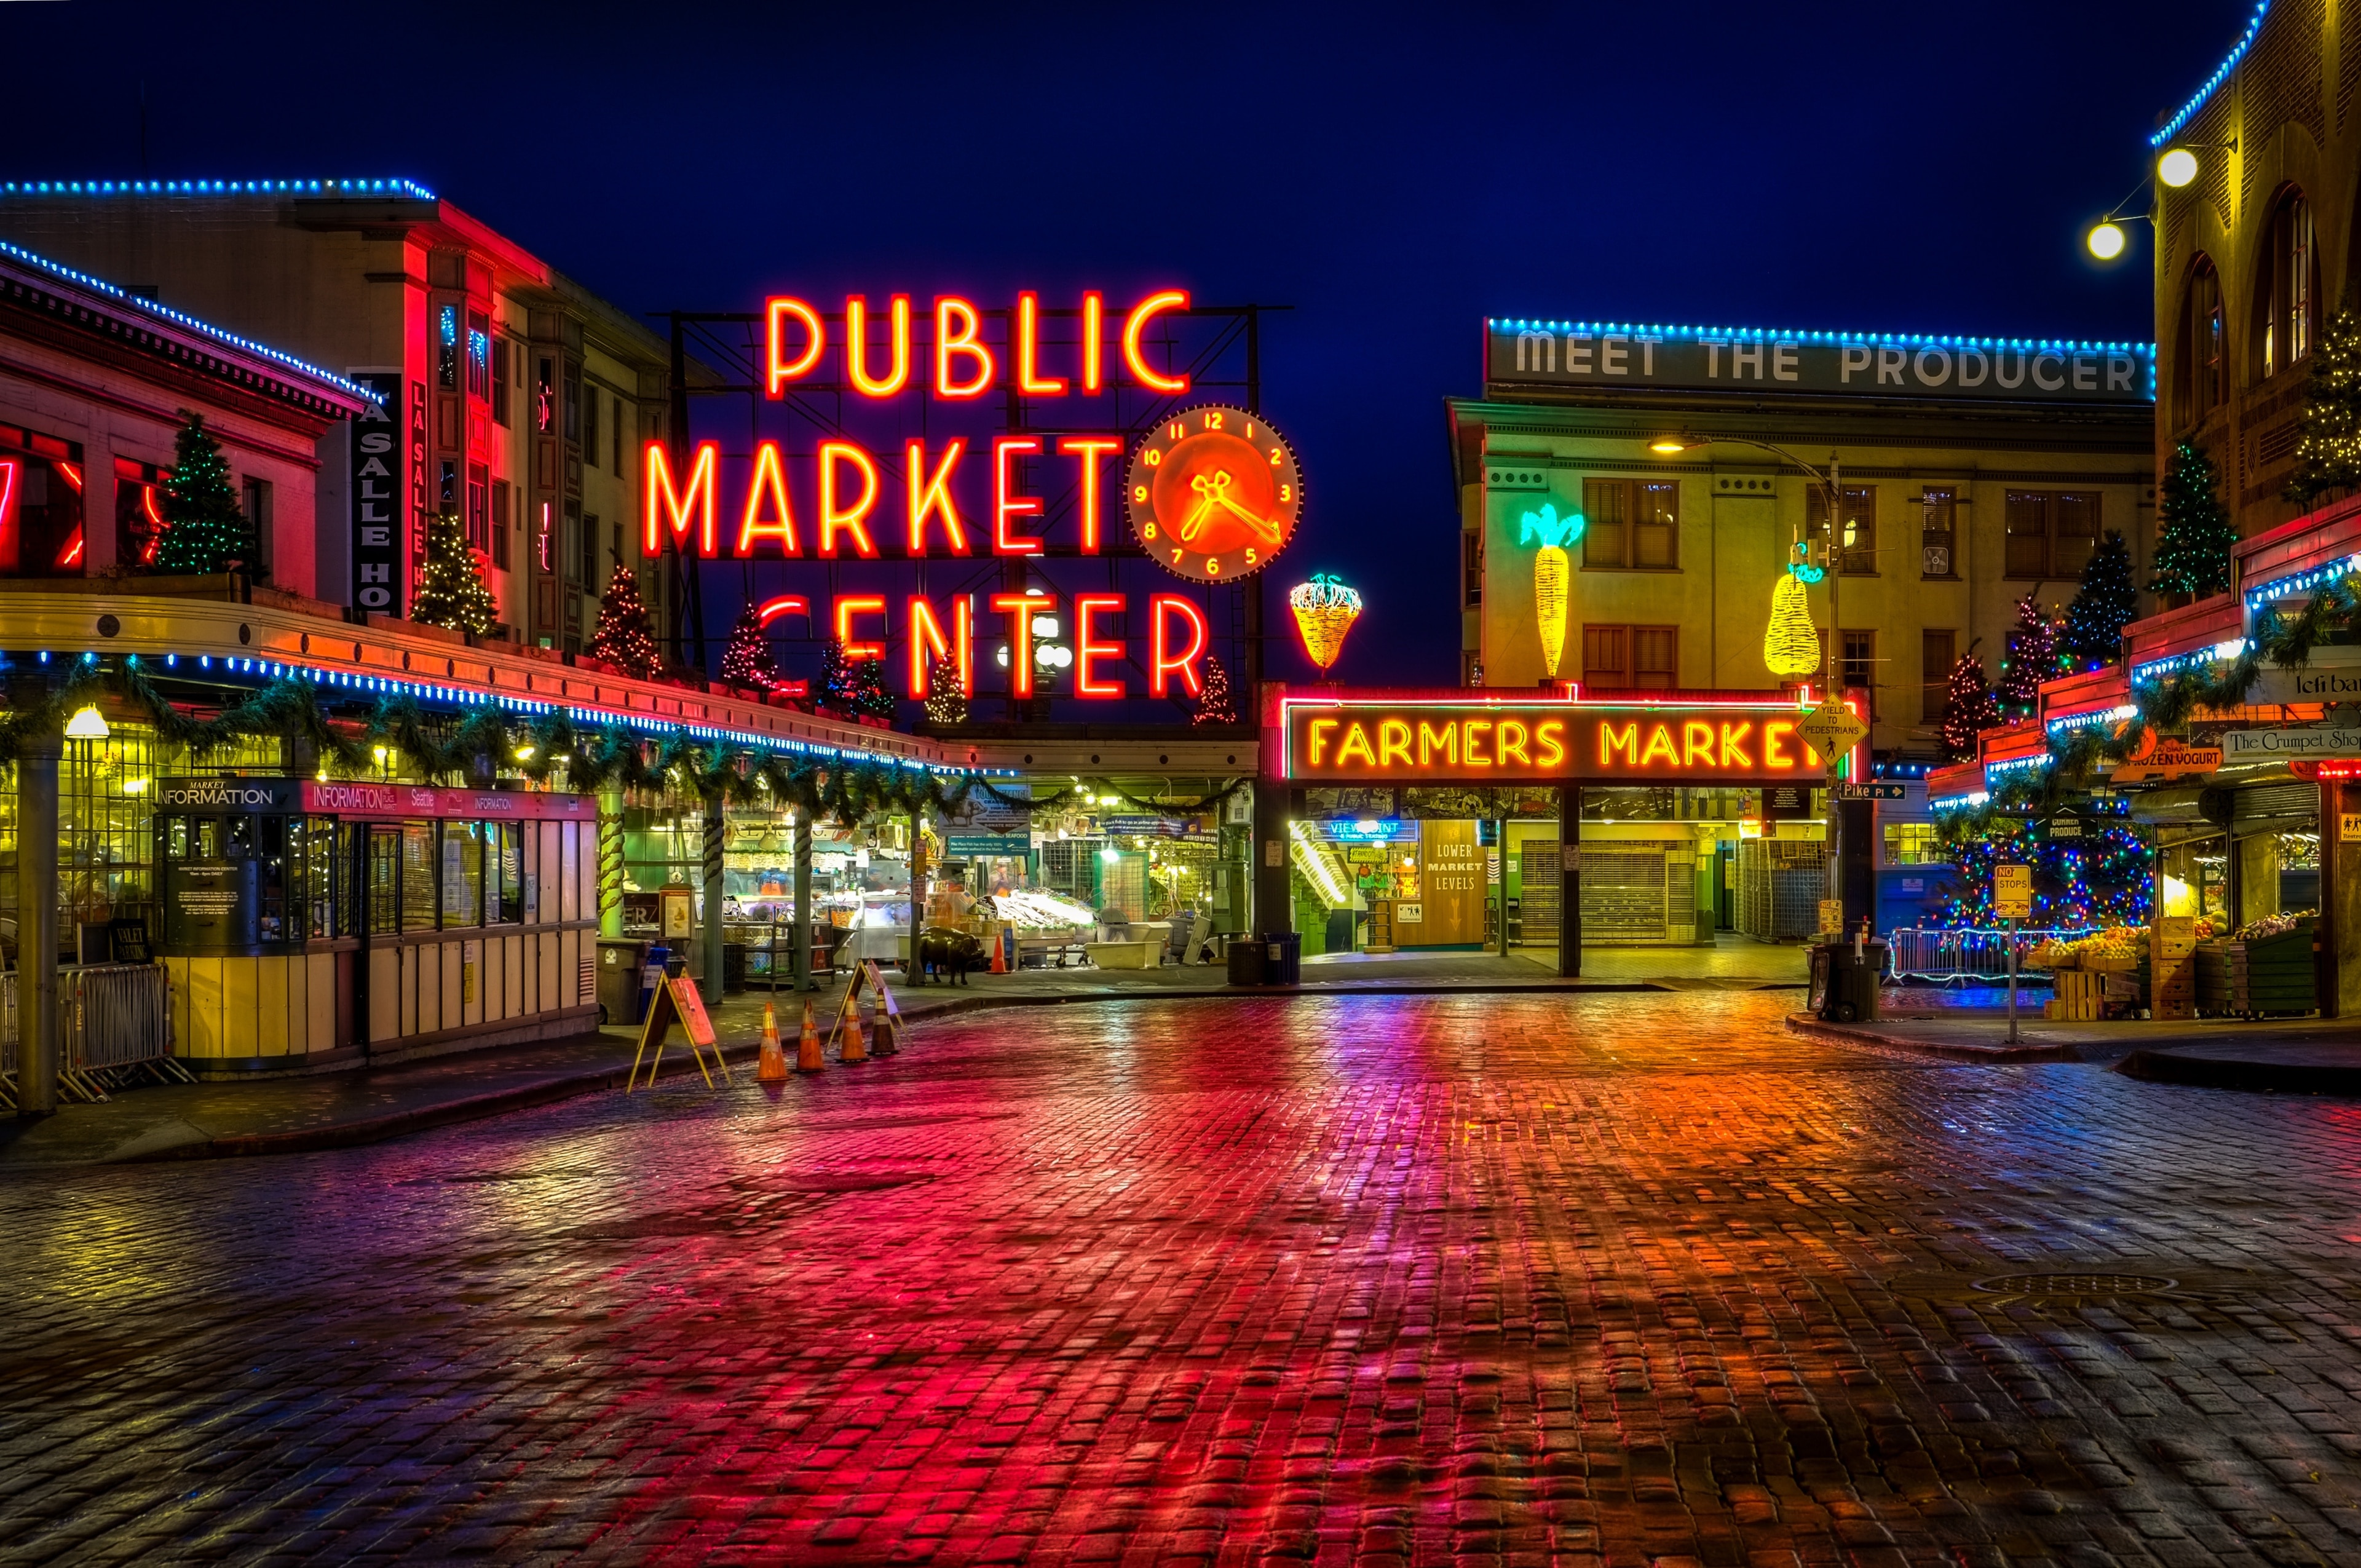 Camina desde el muelle hasta el lugar donde se concentran los alimentos frescos de Seattle, el mercado de agricultores más antiguo de los EE. UU.